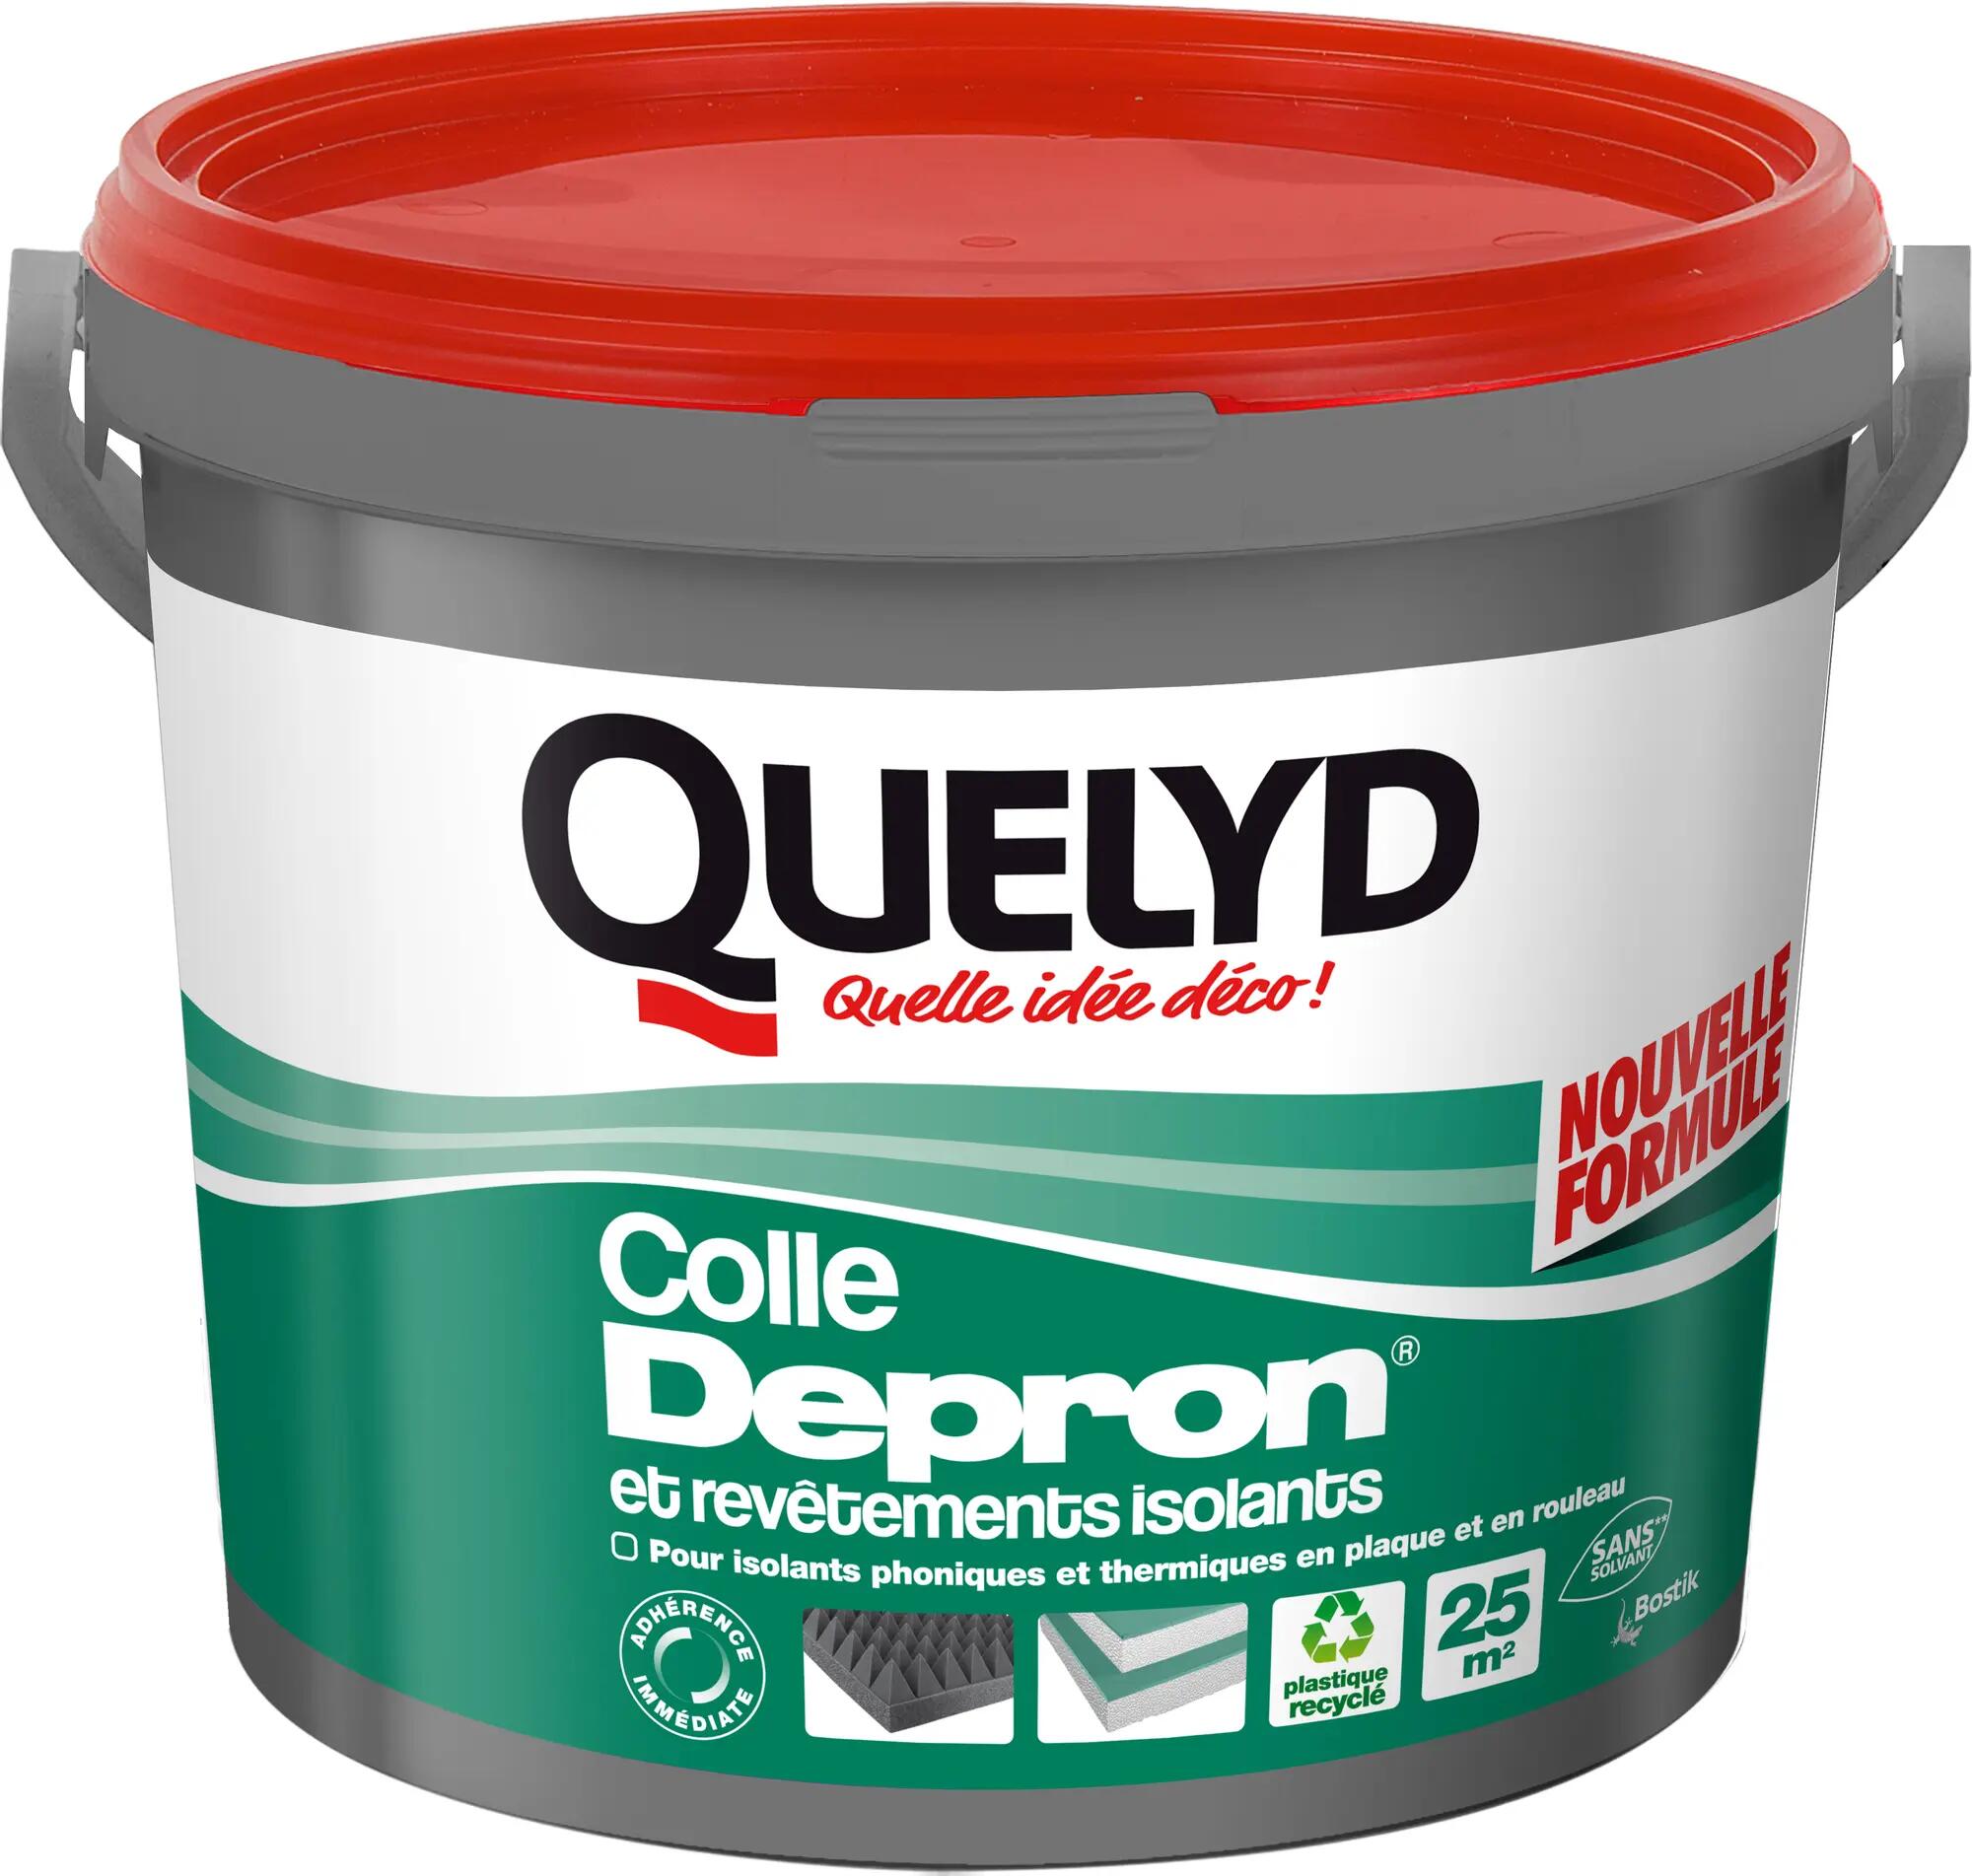 Colle pour matériaux isolants Depron QUELYD, 6 kg